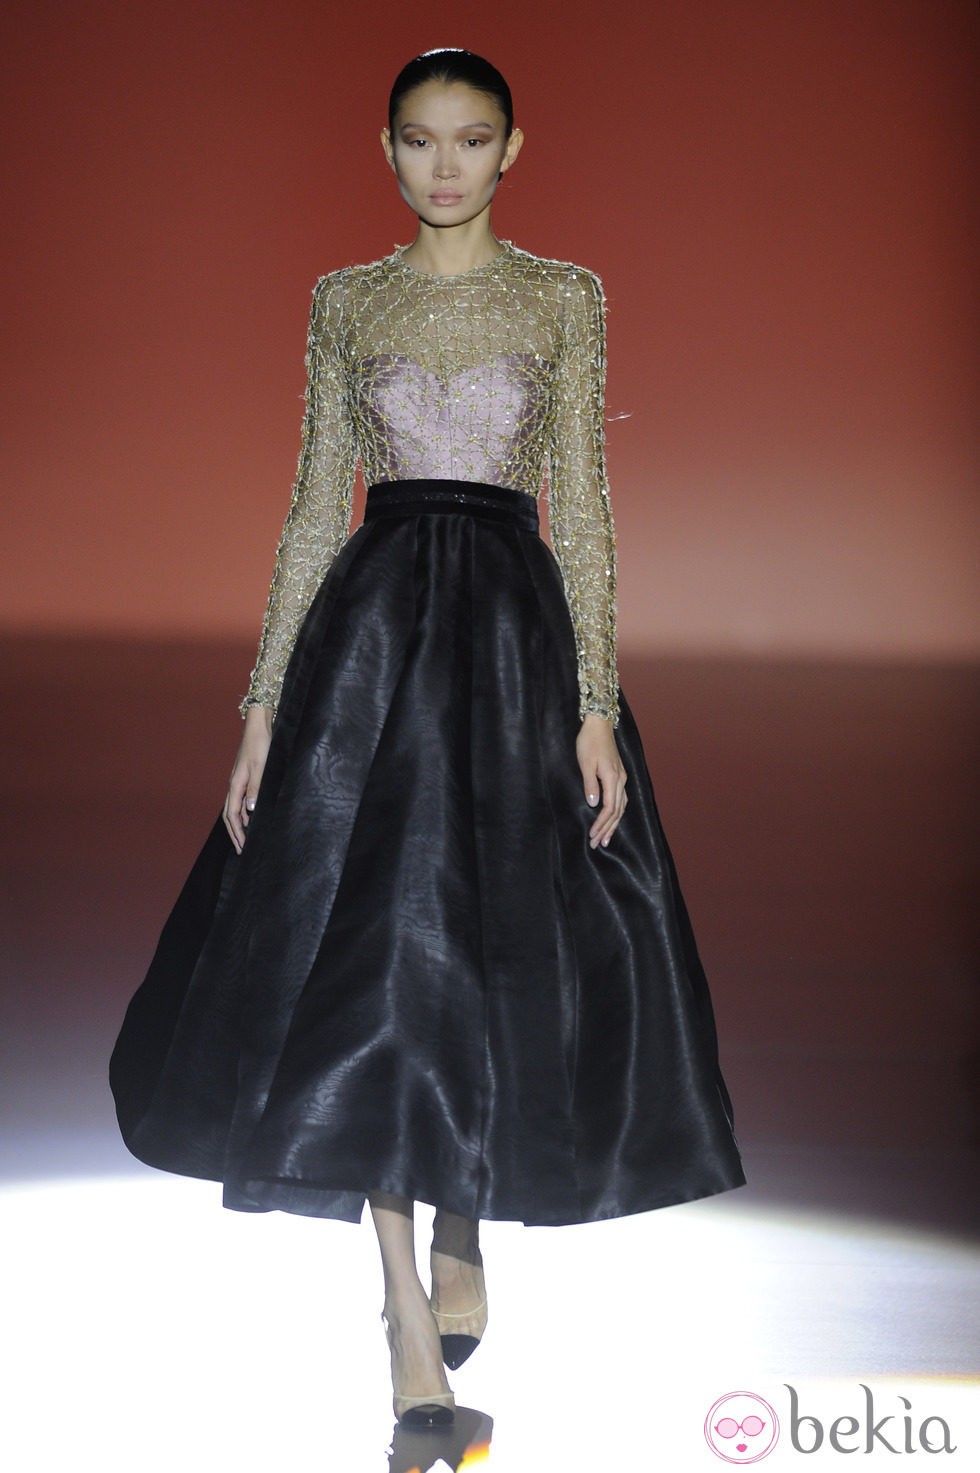 Vestido dos piezas de la colección otoño/invierno 2014/2015 de Hannibal Laguna en Madrid Fashion Week